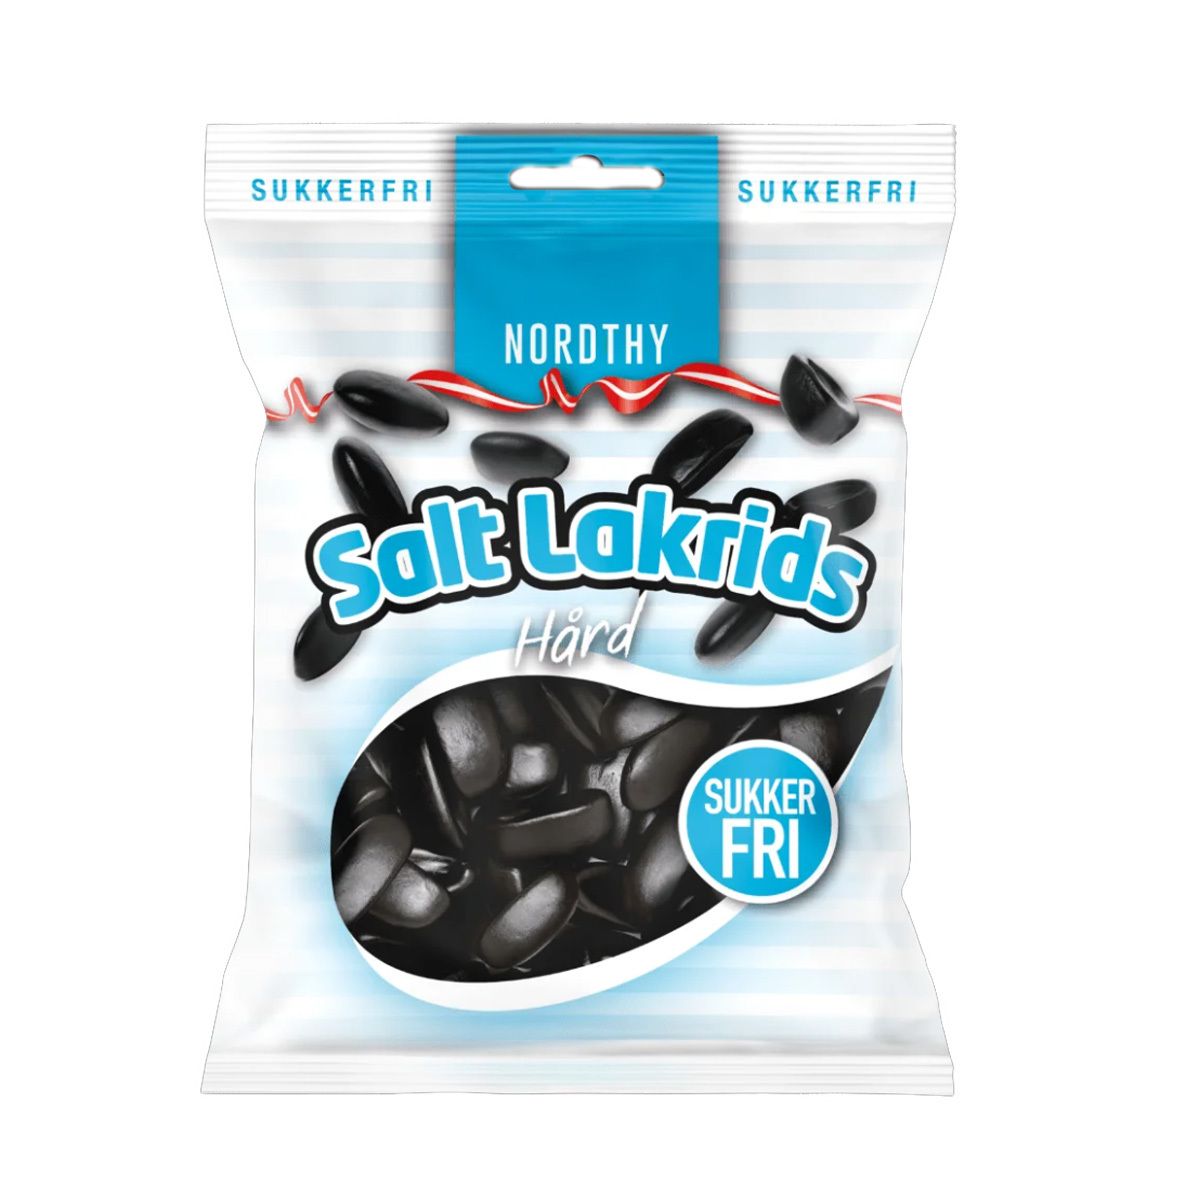 Sukkerfri Salt Lakrids - g - Med24.dk